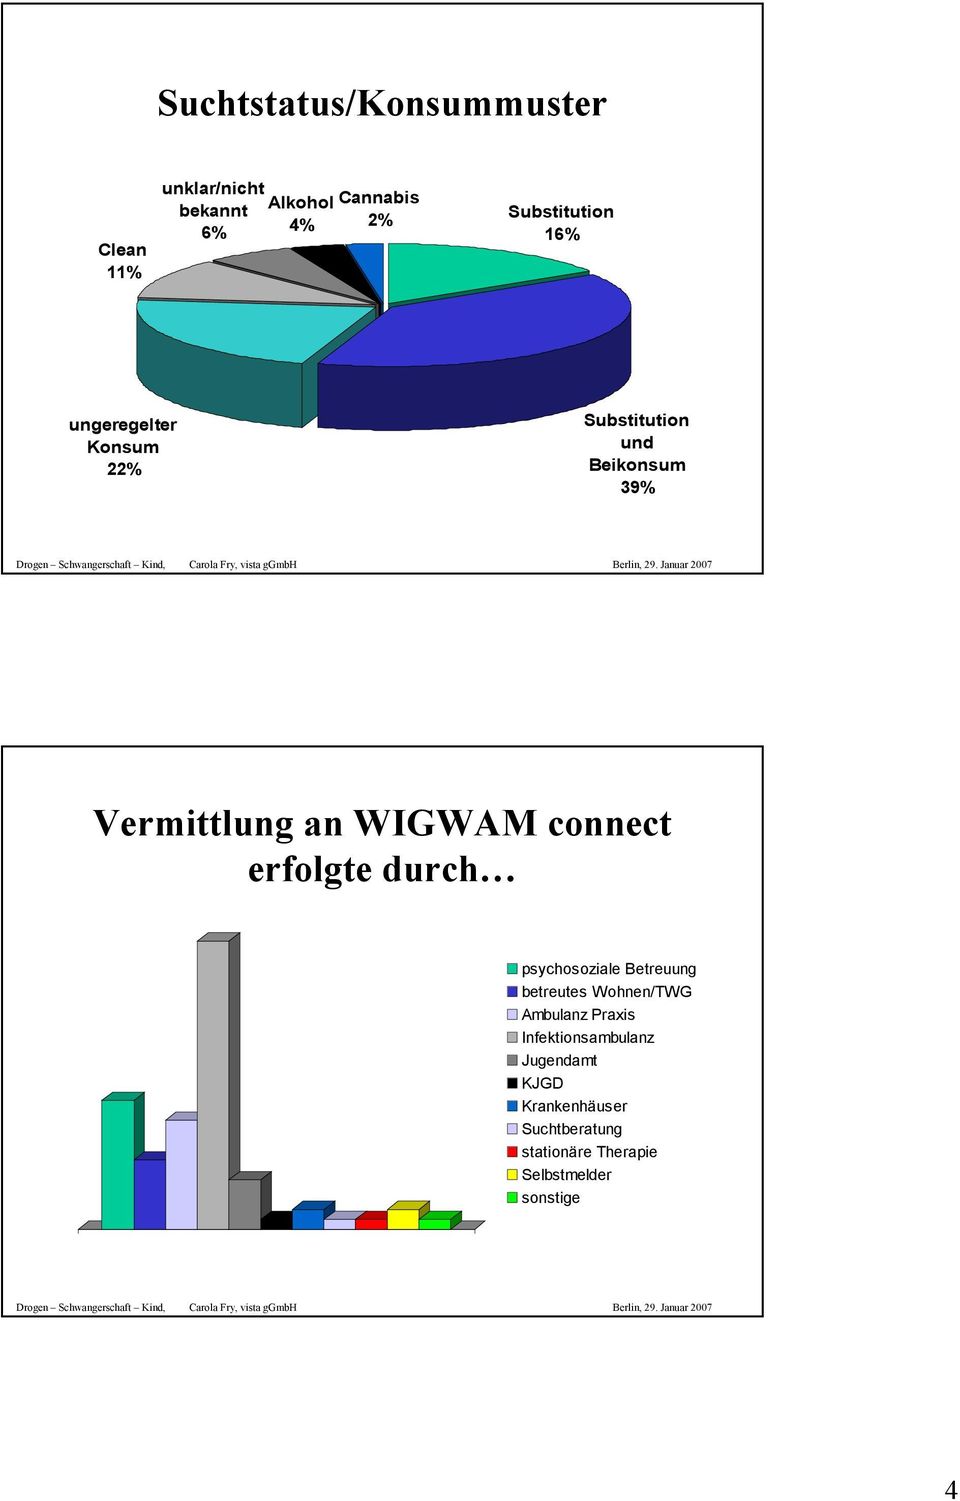 WIGWAM connect erfolgte durch psychosoziale Betreuung betreutes Wohnen/TWG Ambulanz Praxis